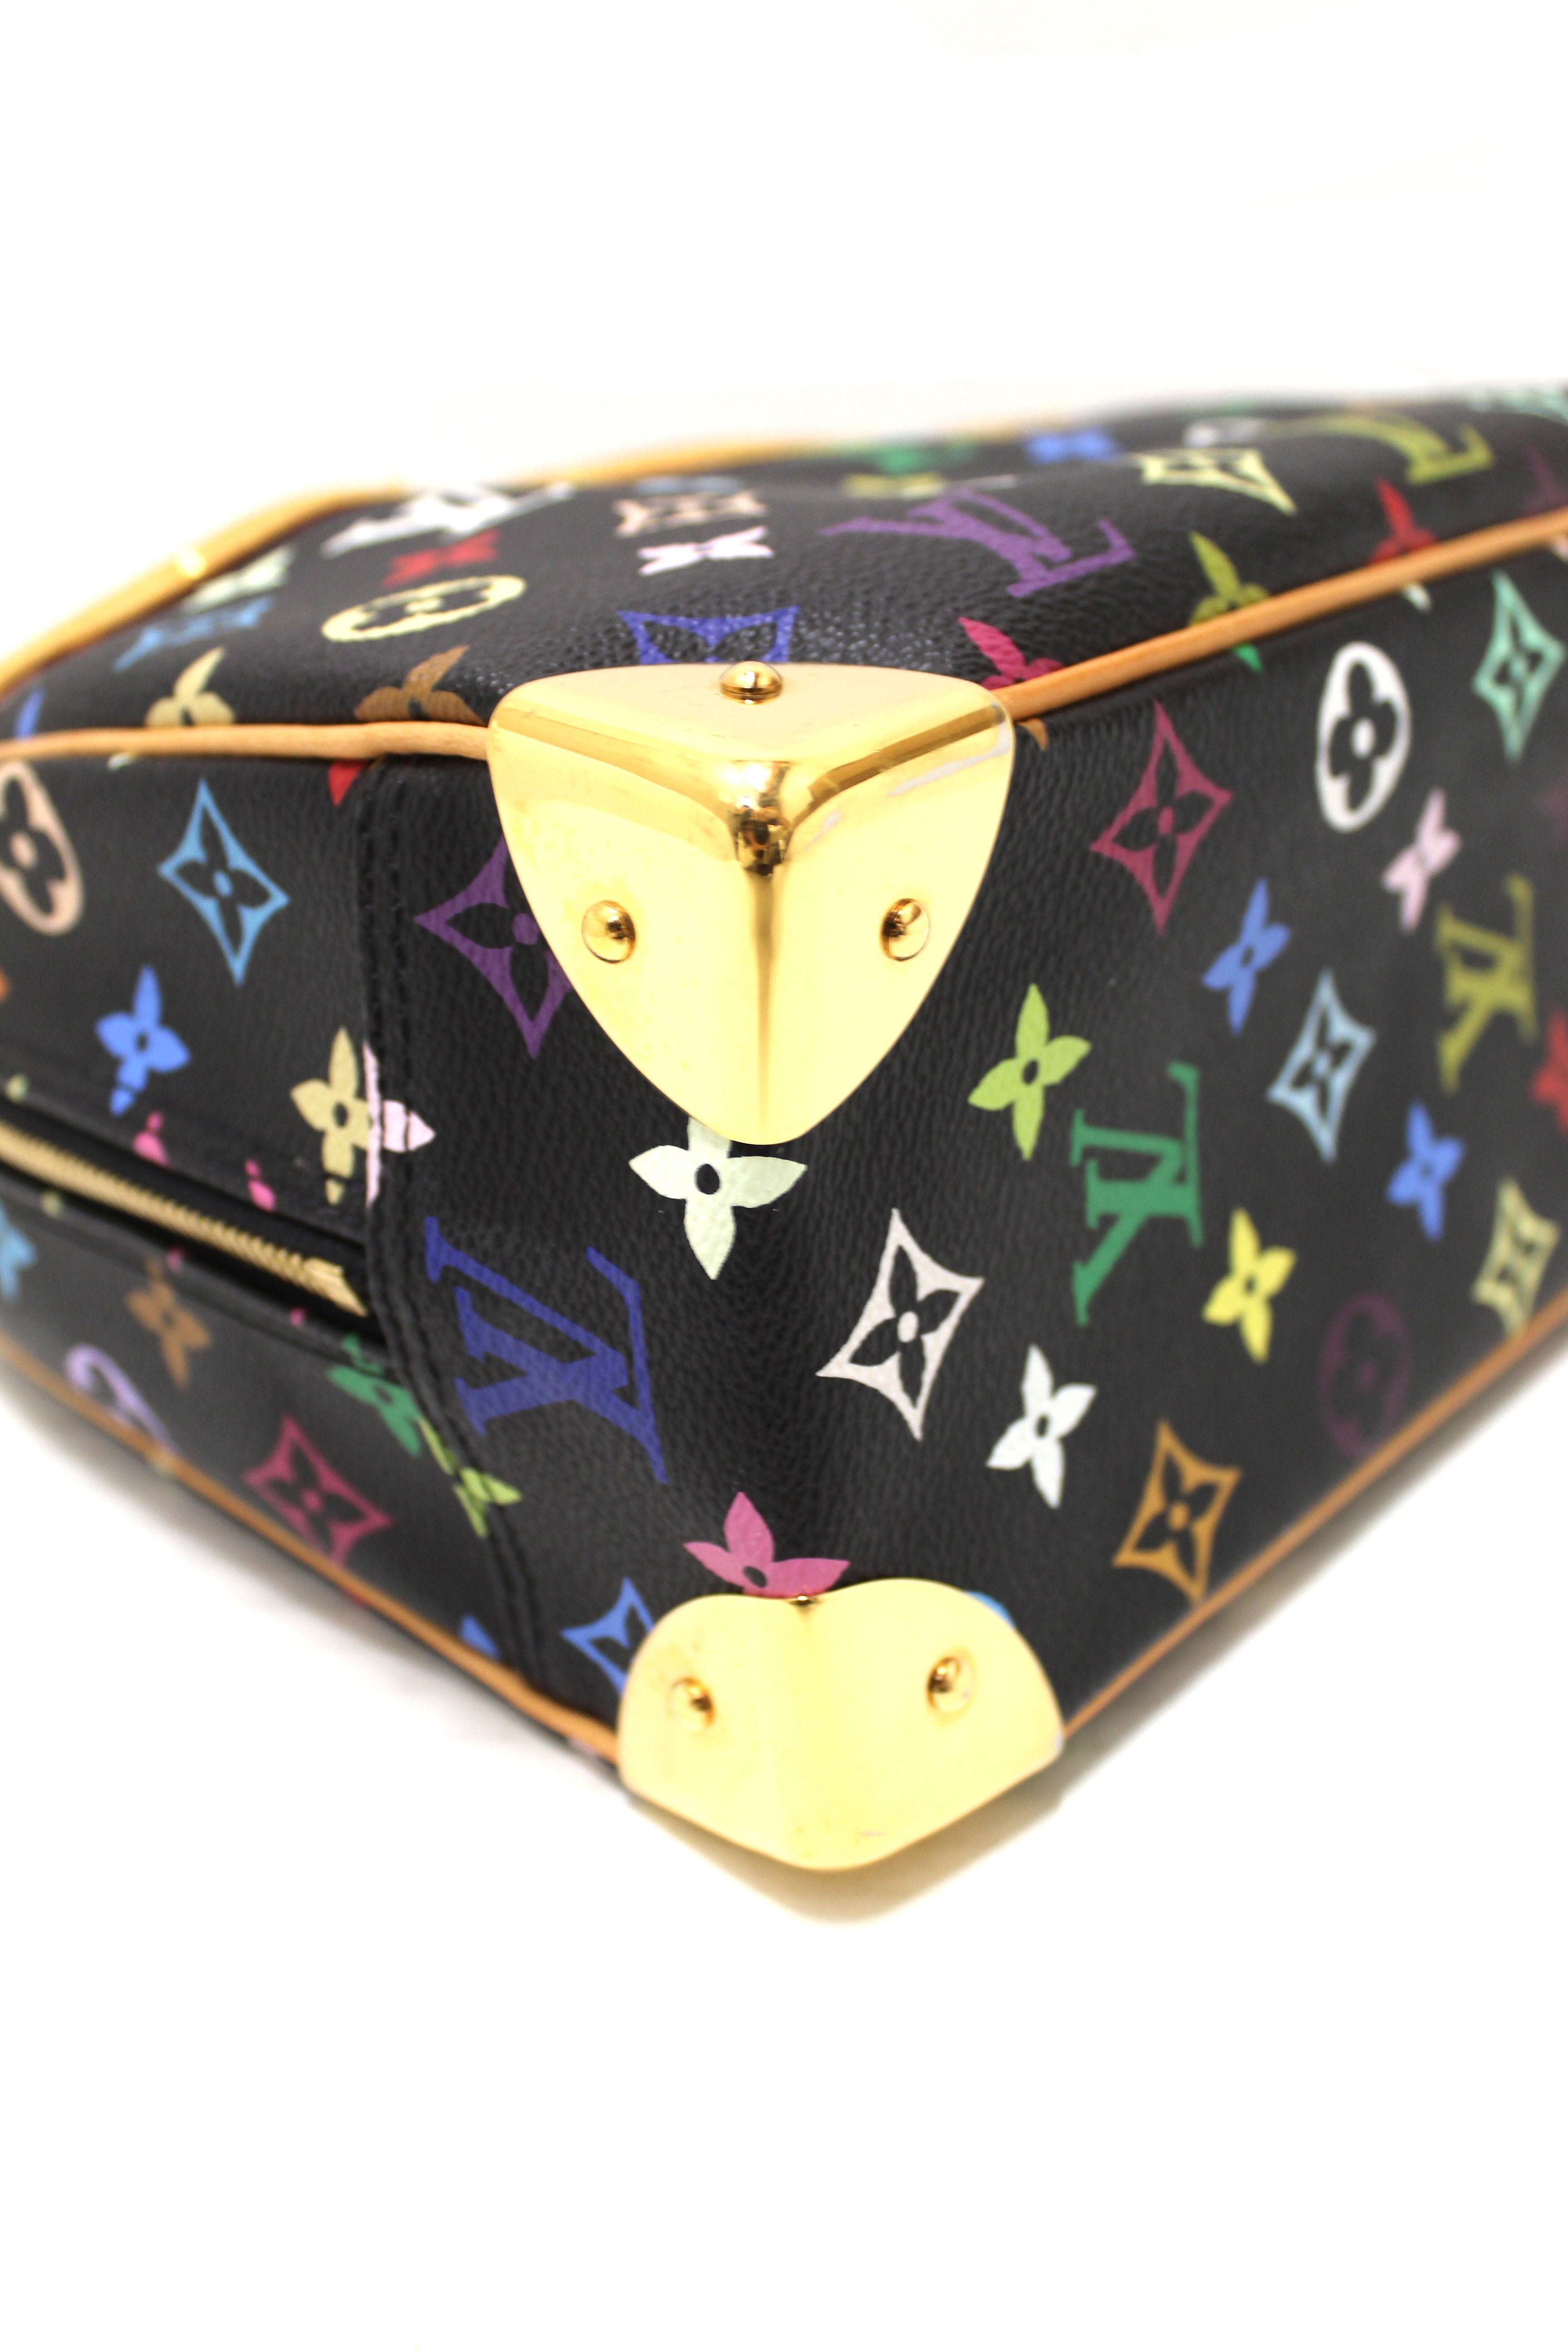 Vintage Multicolore Trouville Bag, Louis Vuitton (Lot 95 - The